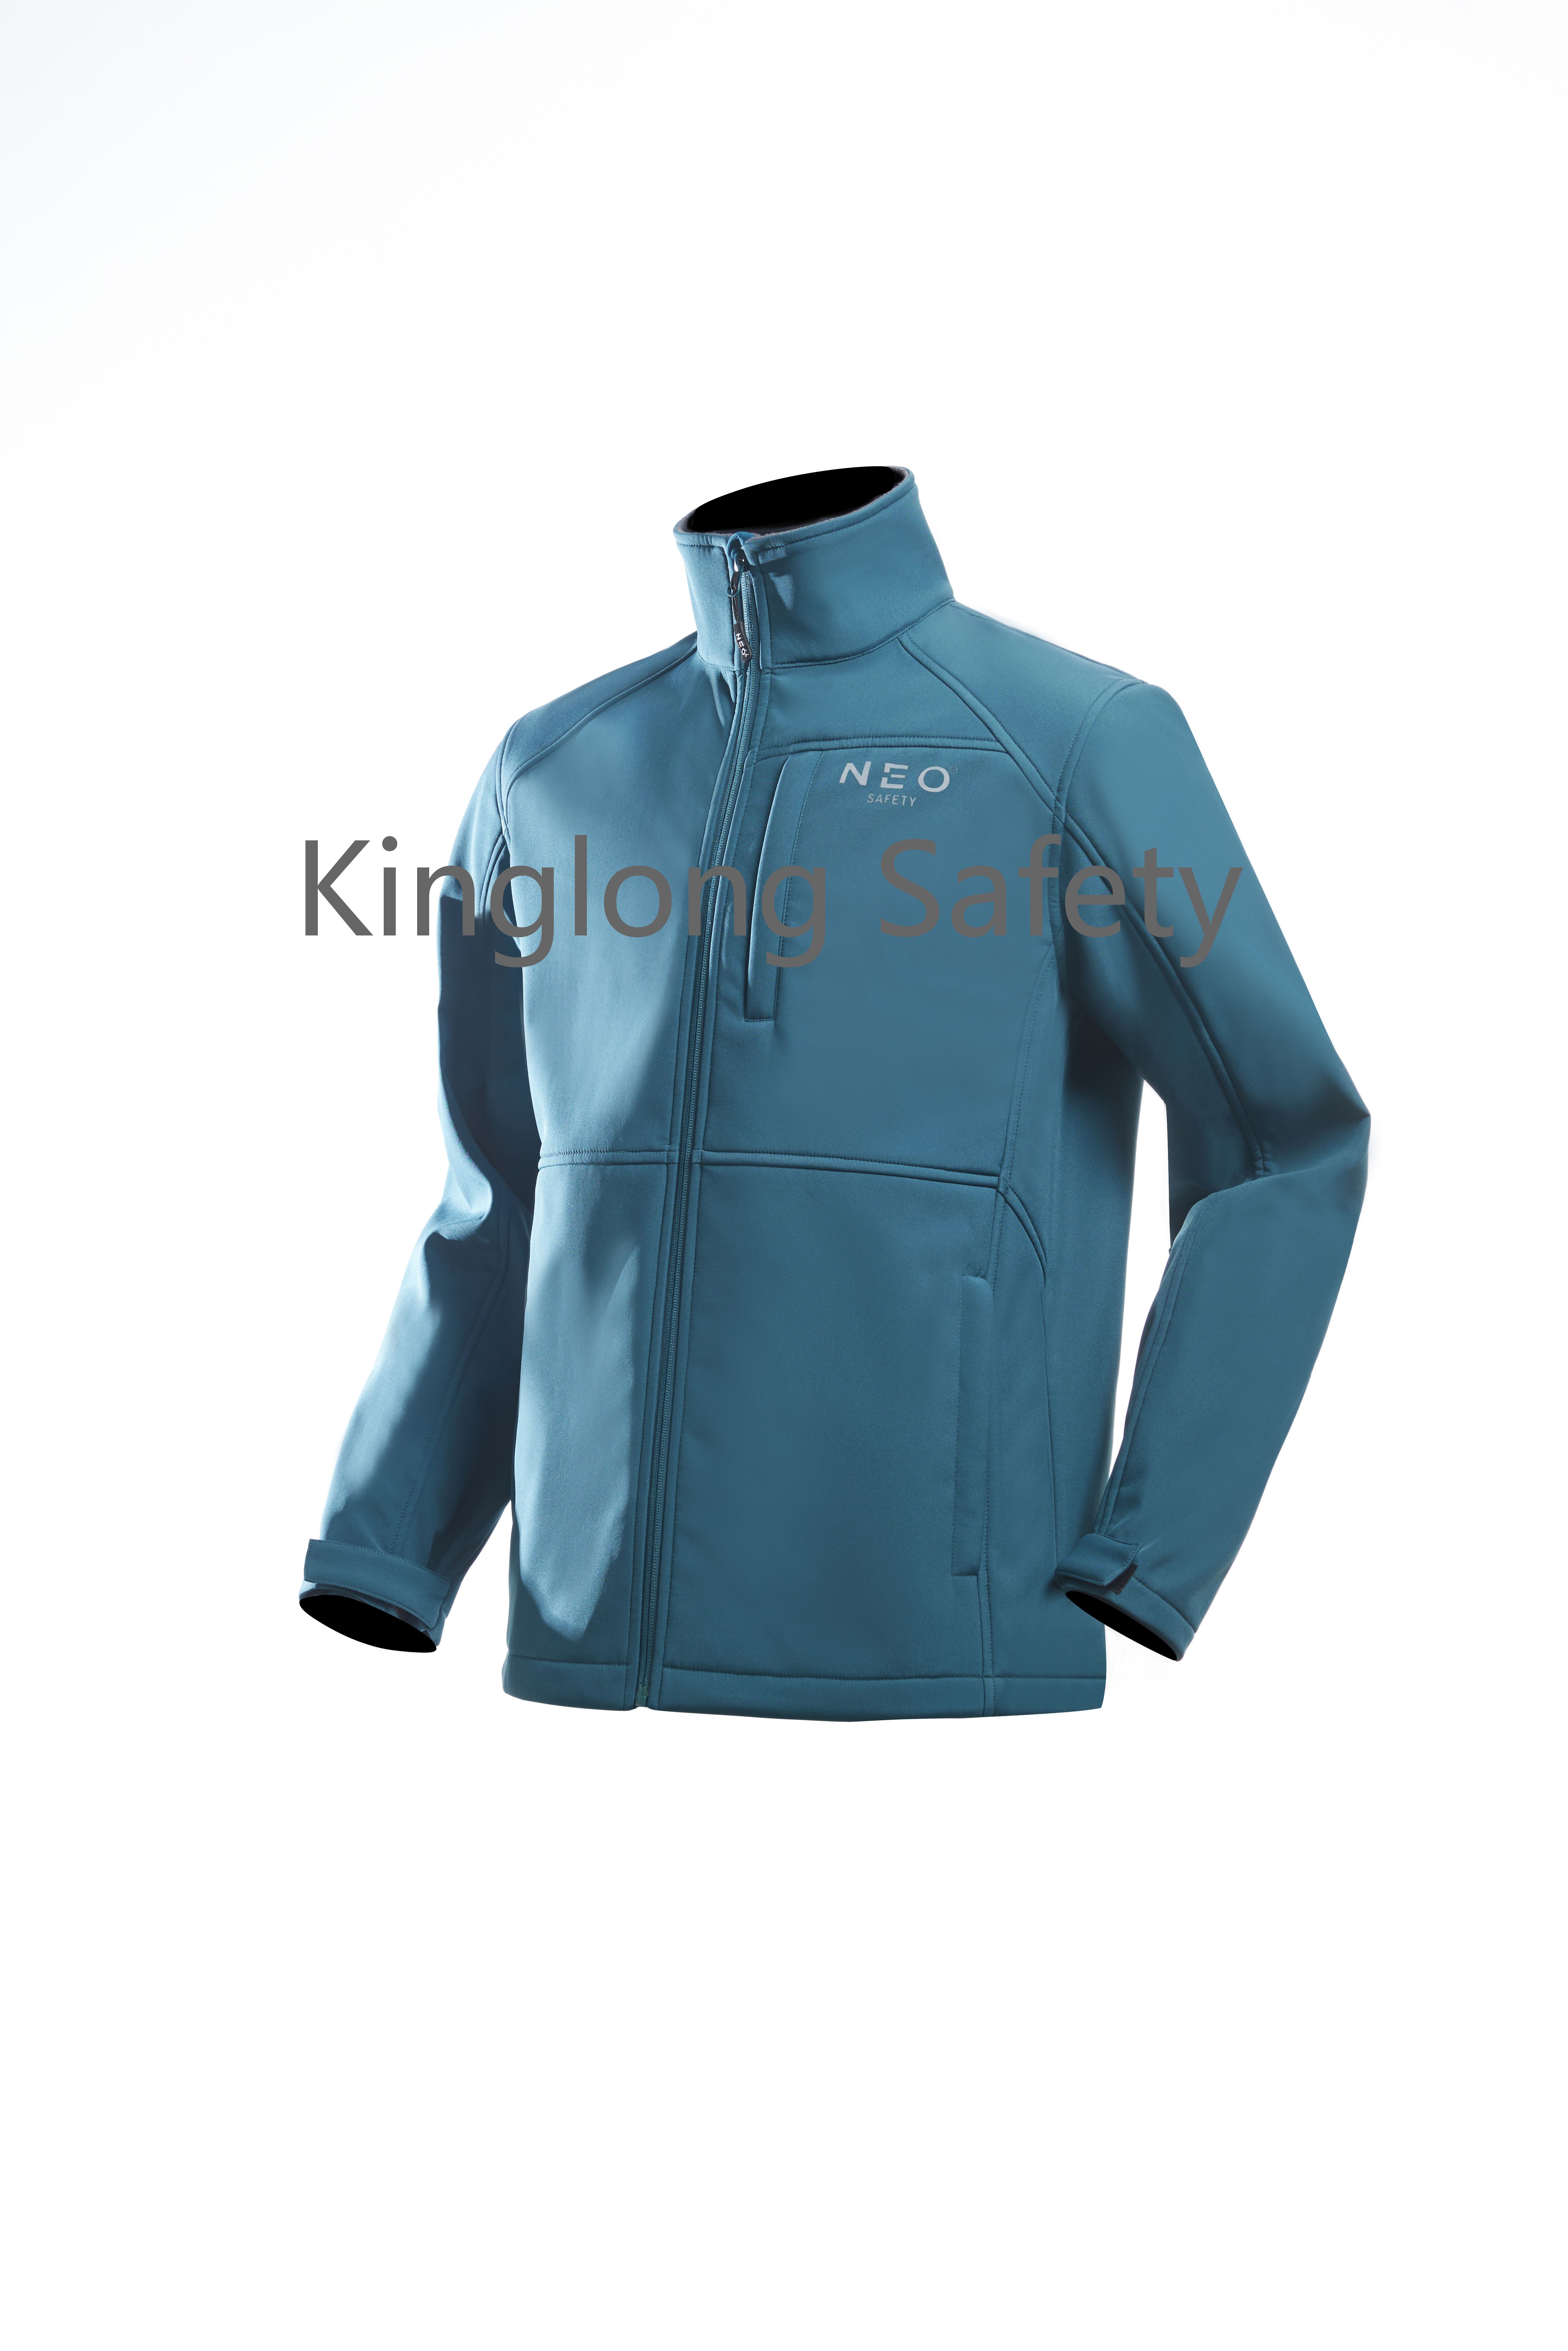 OEM nový cardigan zip límec modré barvy větruodolná softshellová bunda Čína dodává barevnou kombinaci softshellová bunda